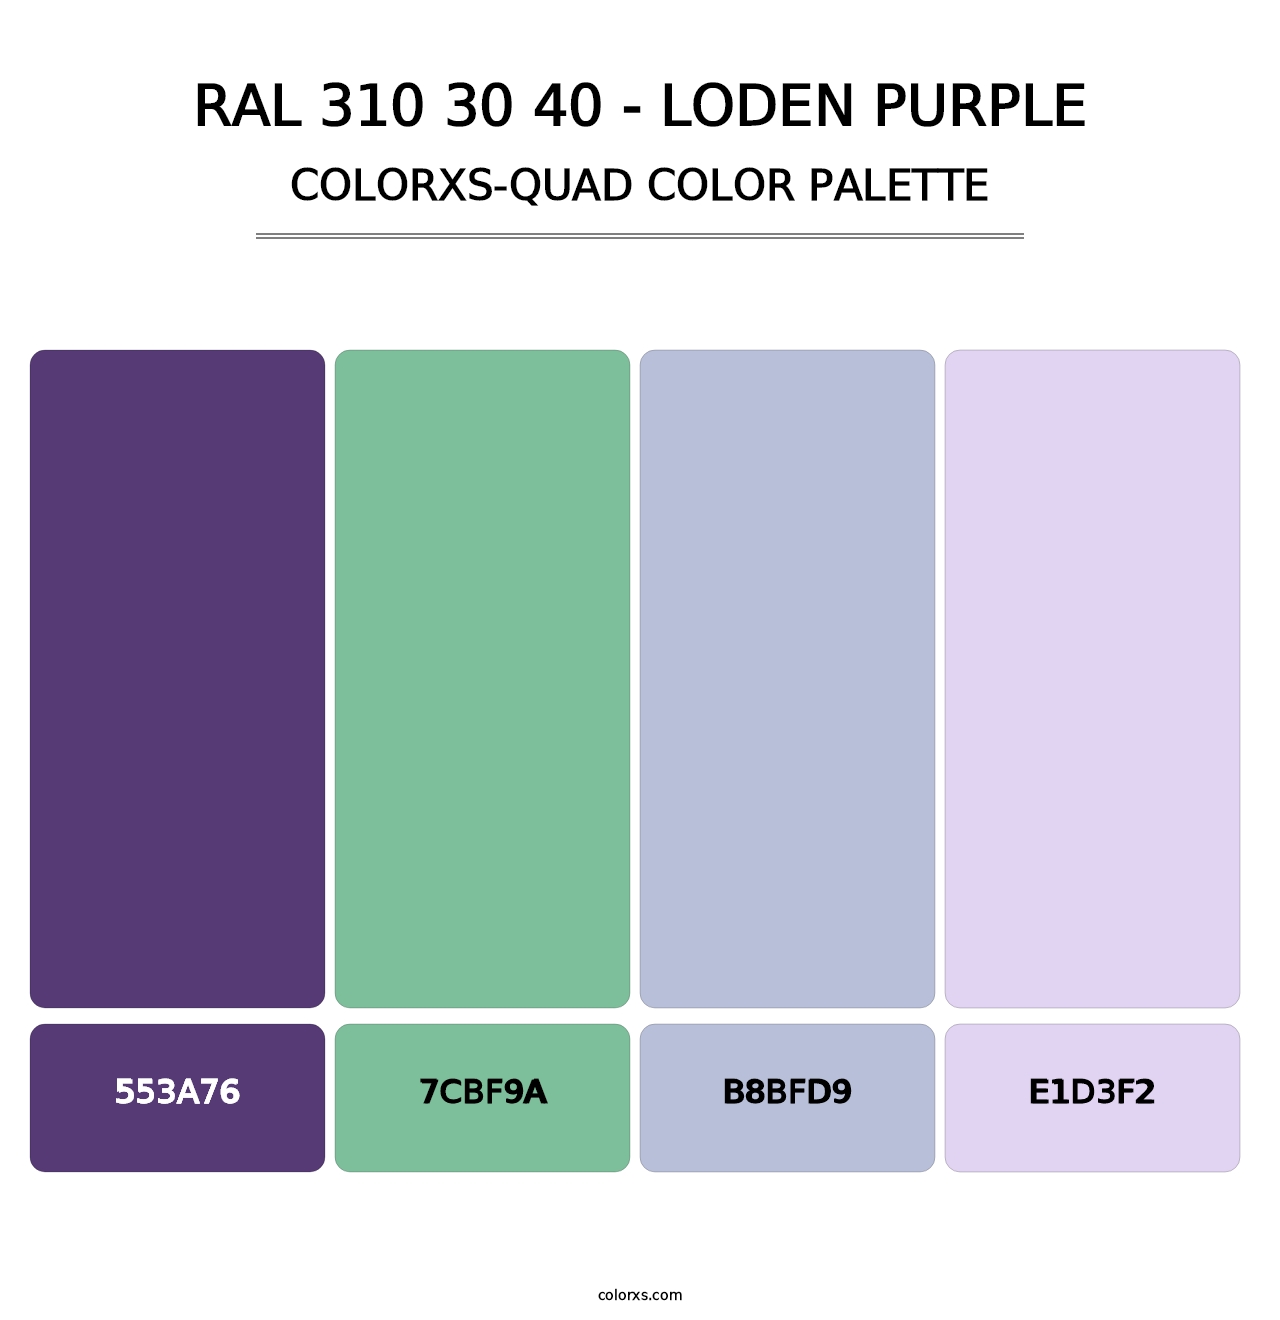 RAL 310 30 40 - Loden Purple - Colorxs Quad Palette